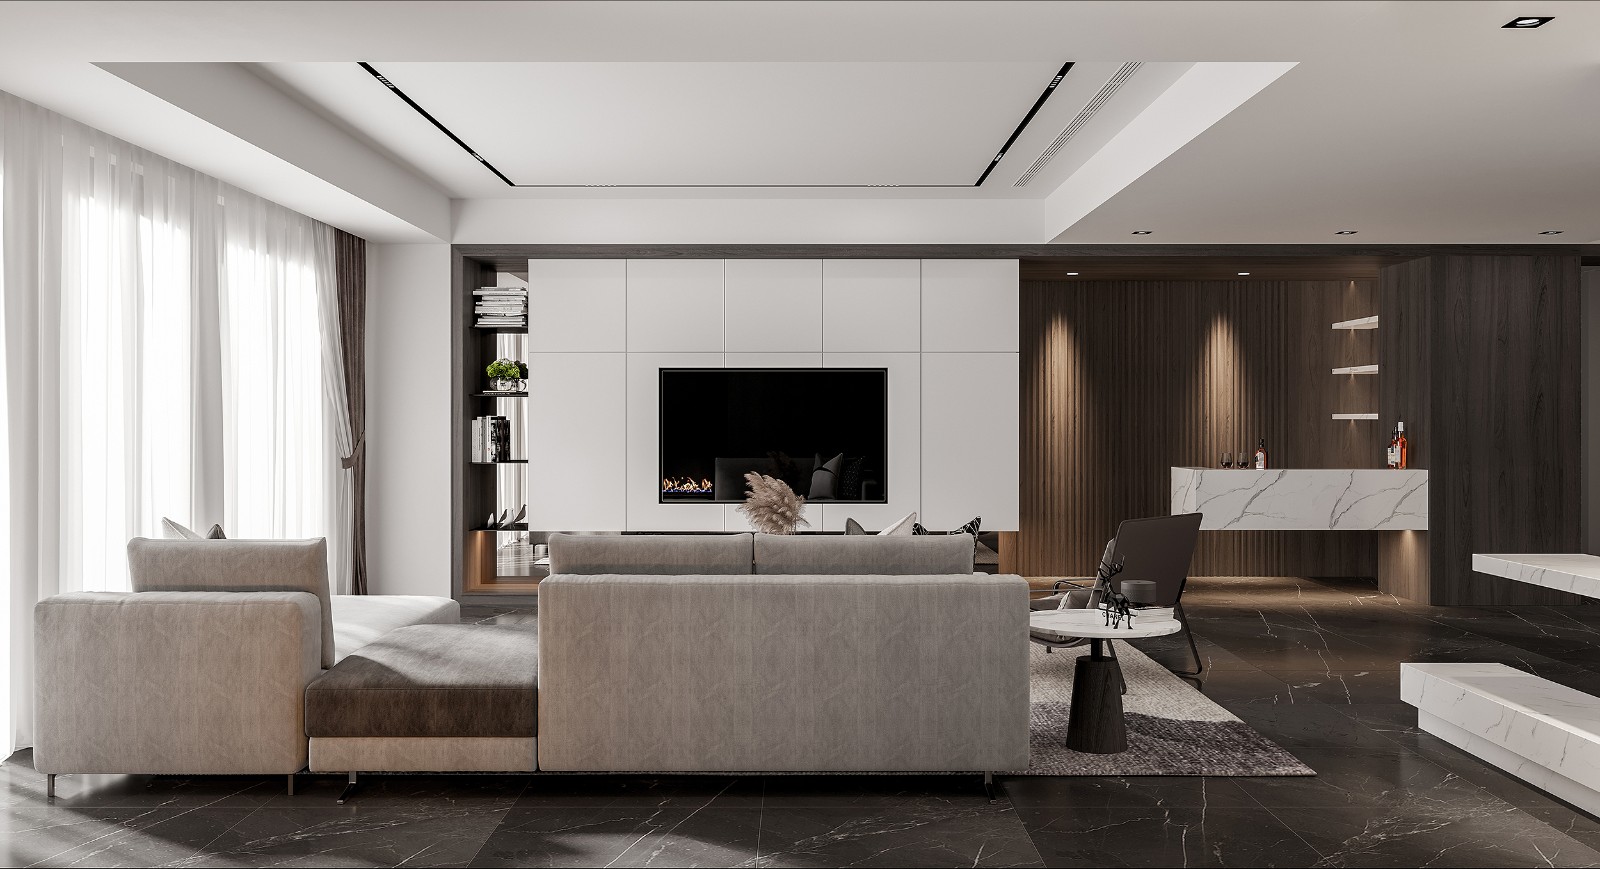 客厅空间动线能让主人自然的在家庭中穿梭，背景墙堆叠出丰富的空间层次感。